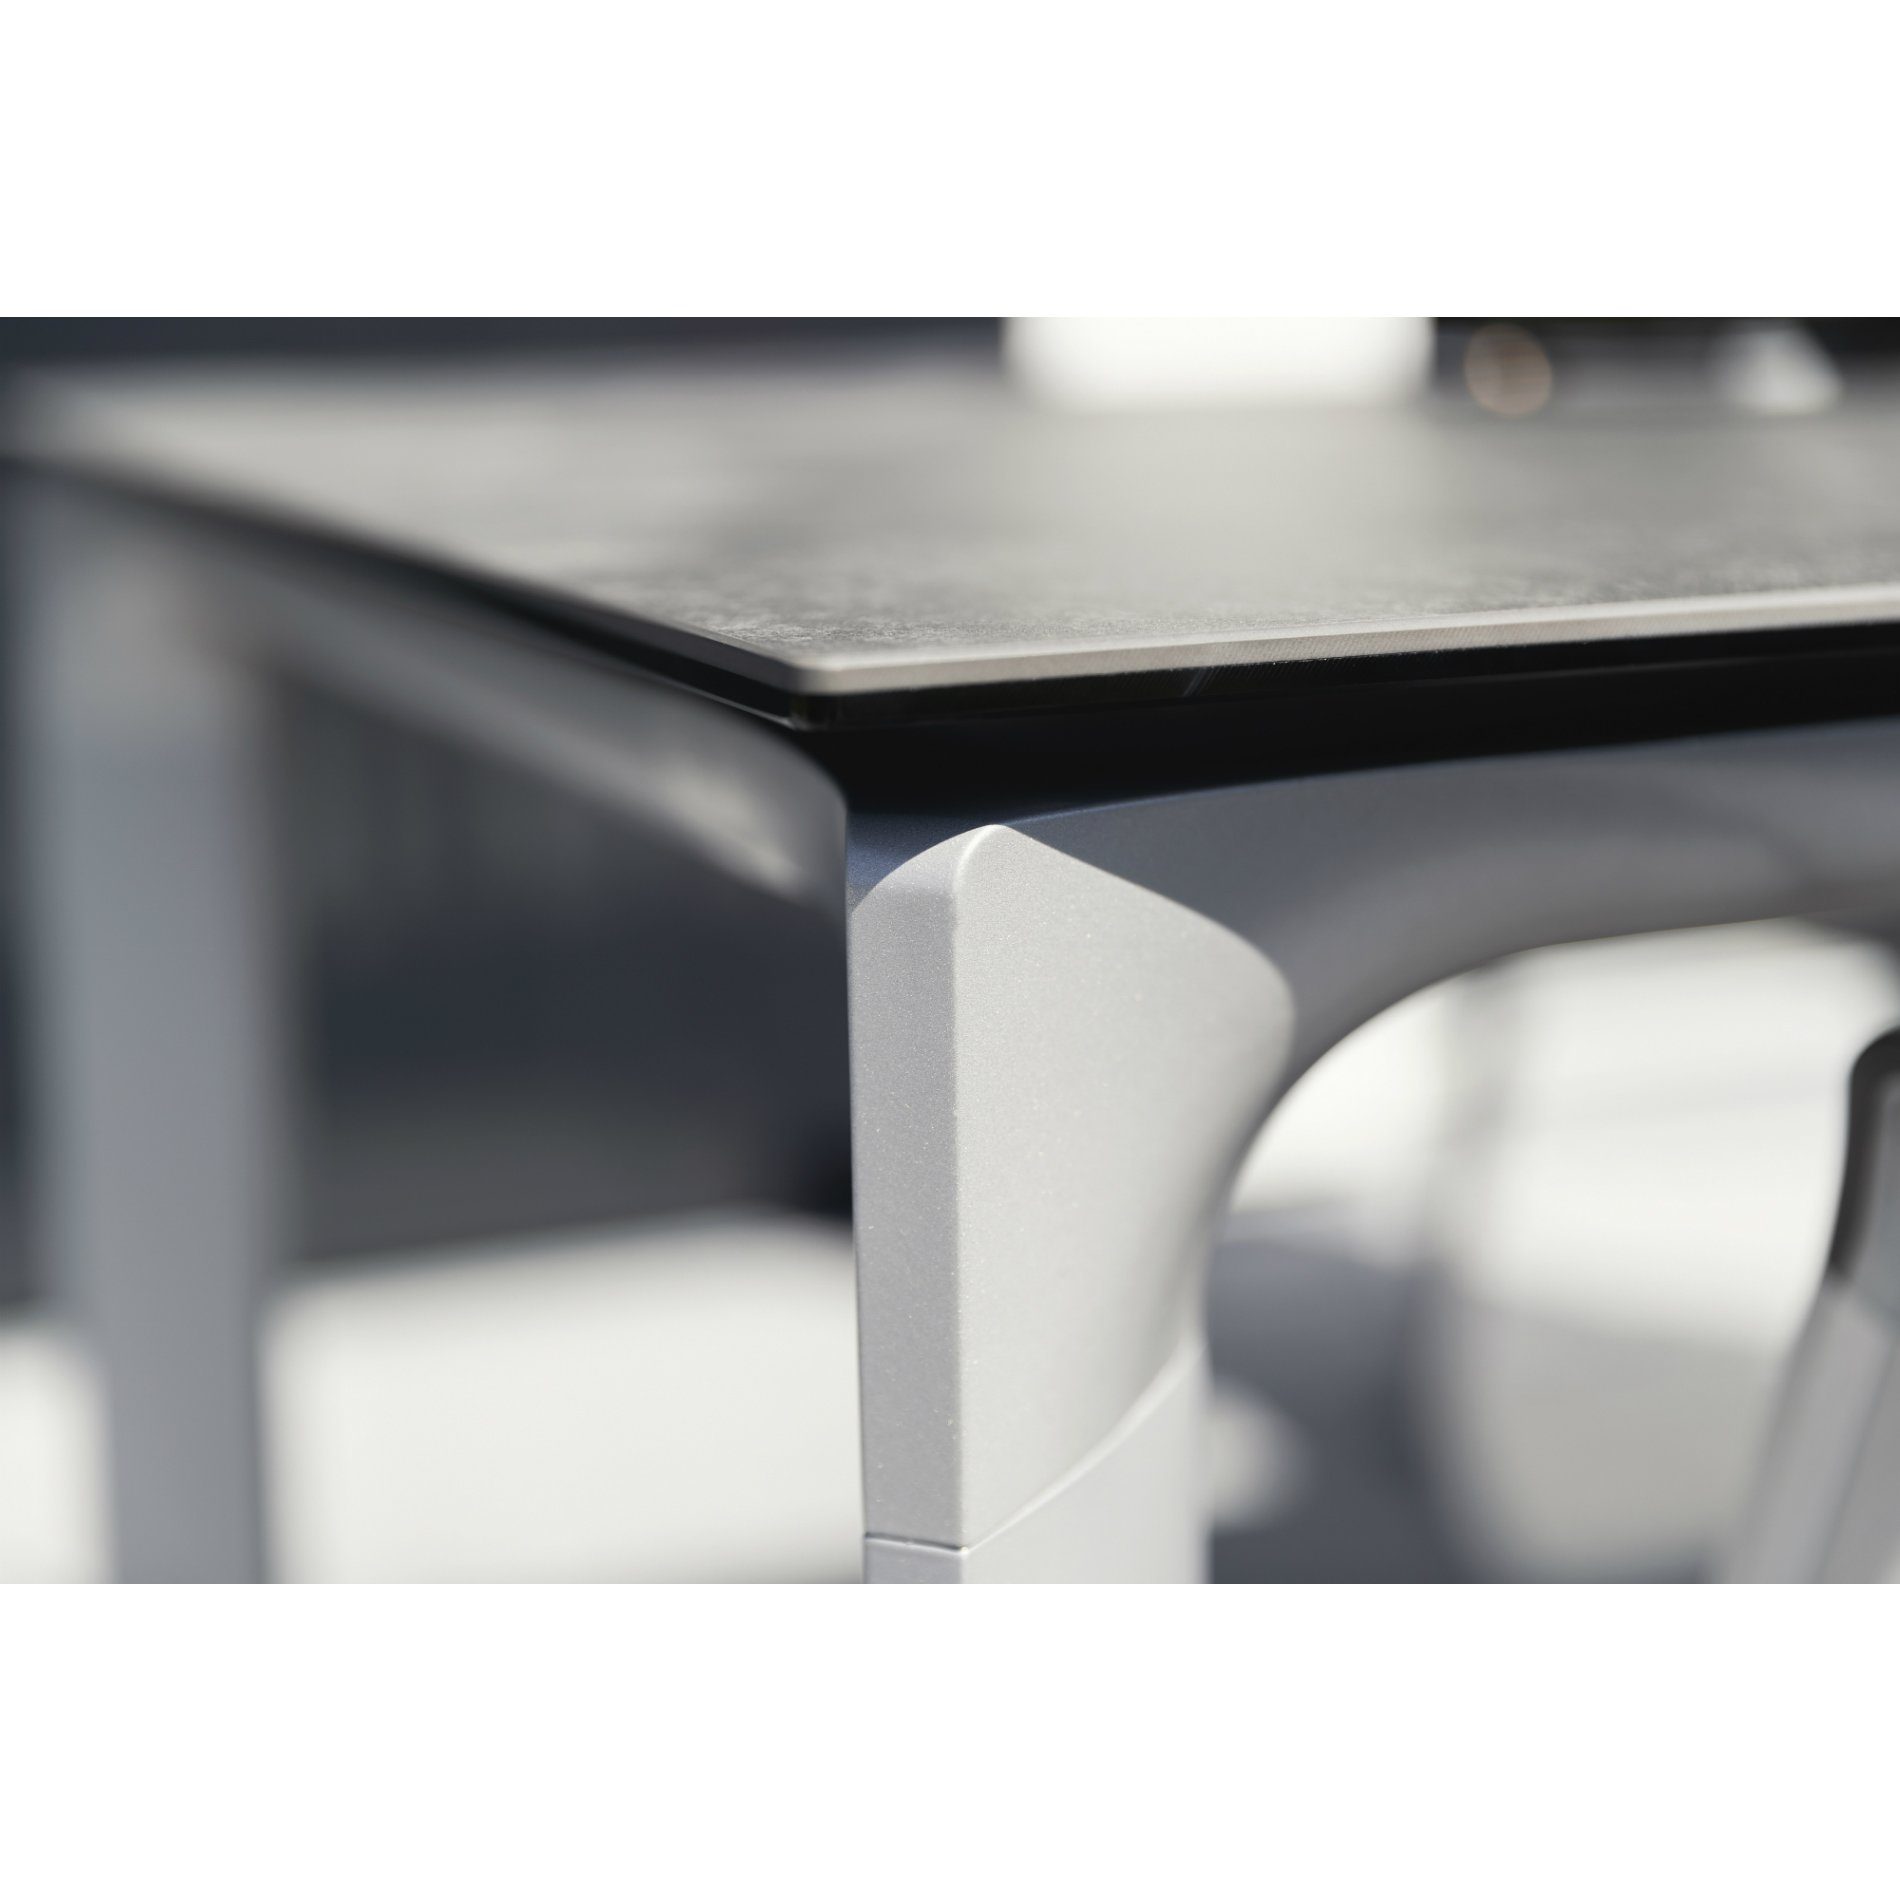 Kettler Tischgestell "Diamond", Aluminium silber, Tischplatte HPL anthrazit